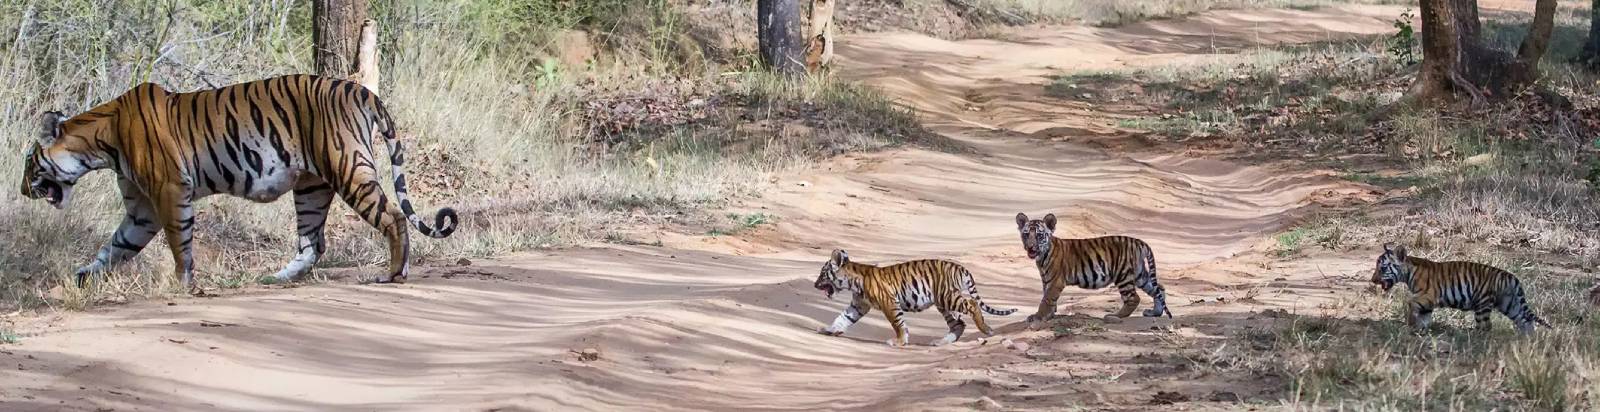 Bandippur National Park & Tiger Reserve Karnataka, South India